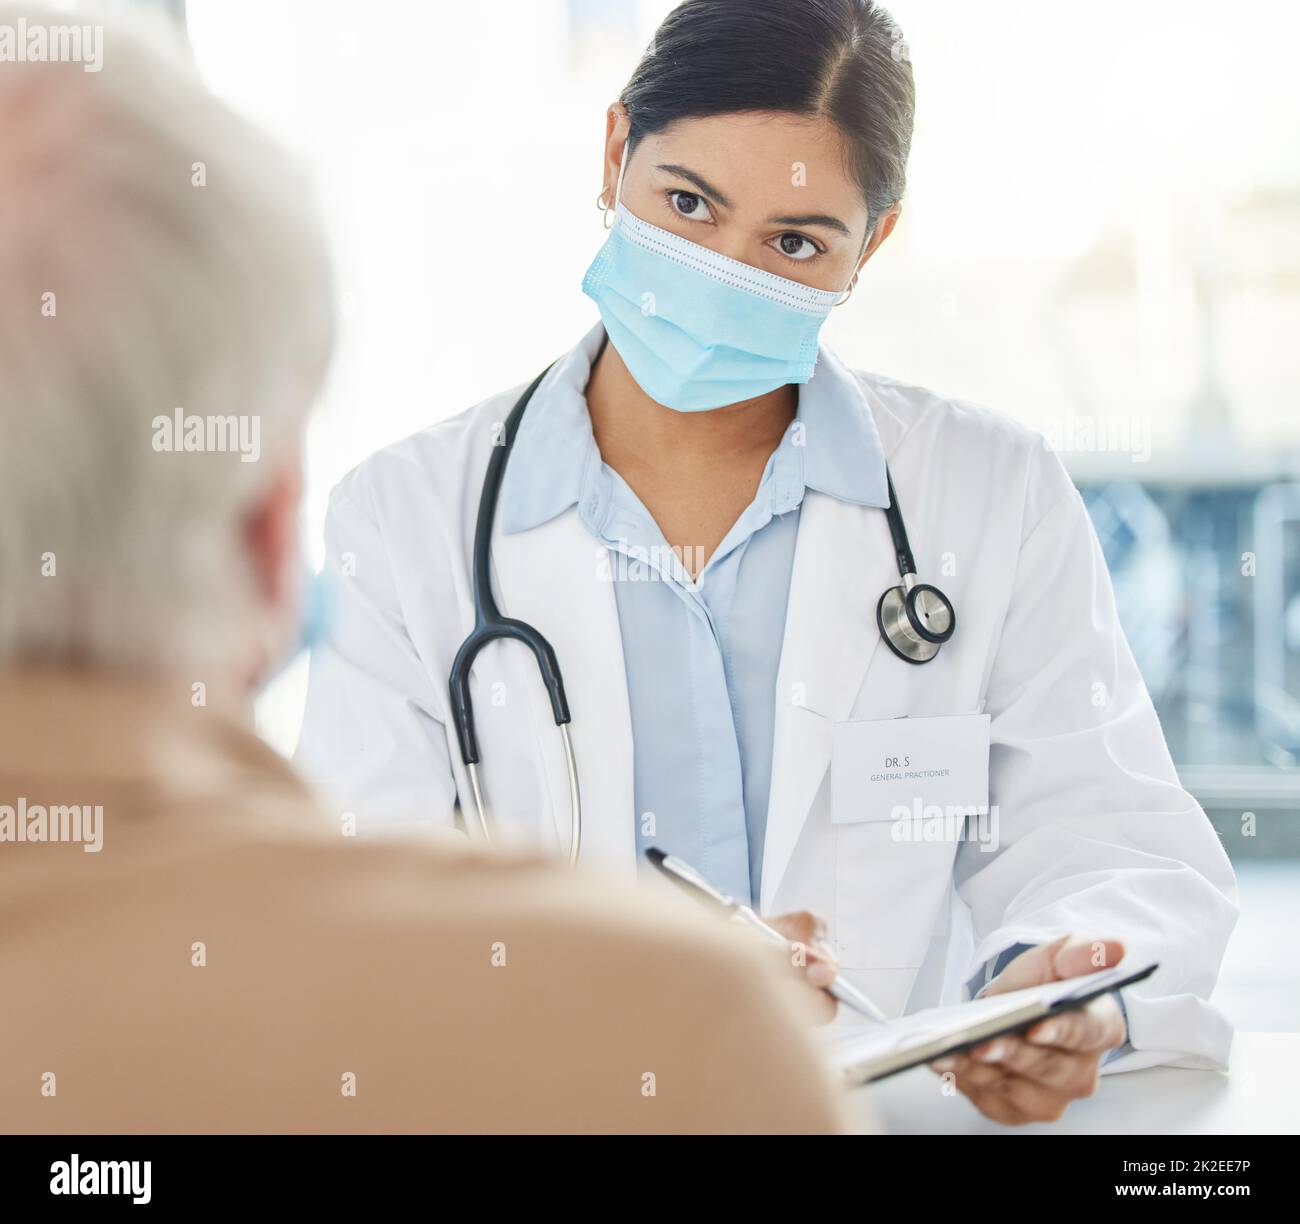 Siete allergici a qualsiasi cosa. Shot di un medico che indossa una maschera facciale e si siede con il paziente anziano durante un consulto nella sua clinica. Foto Stock